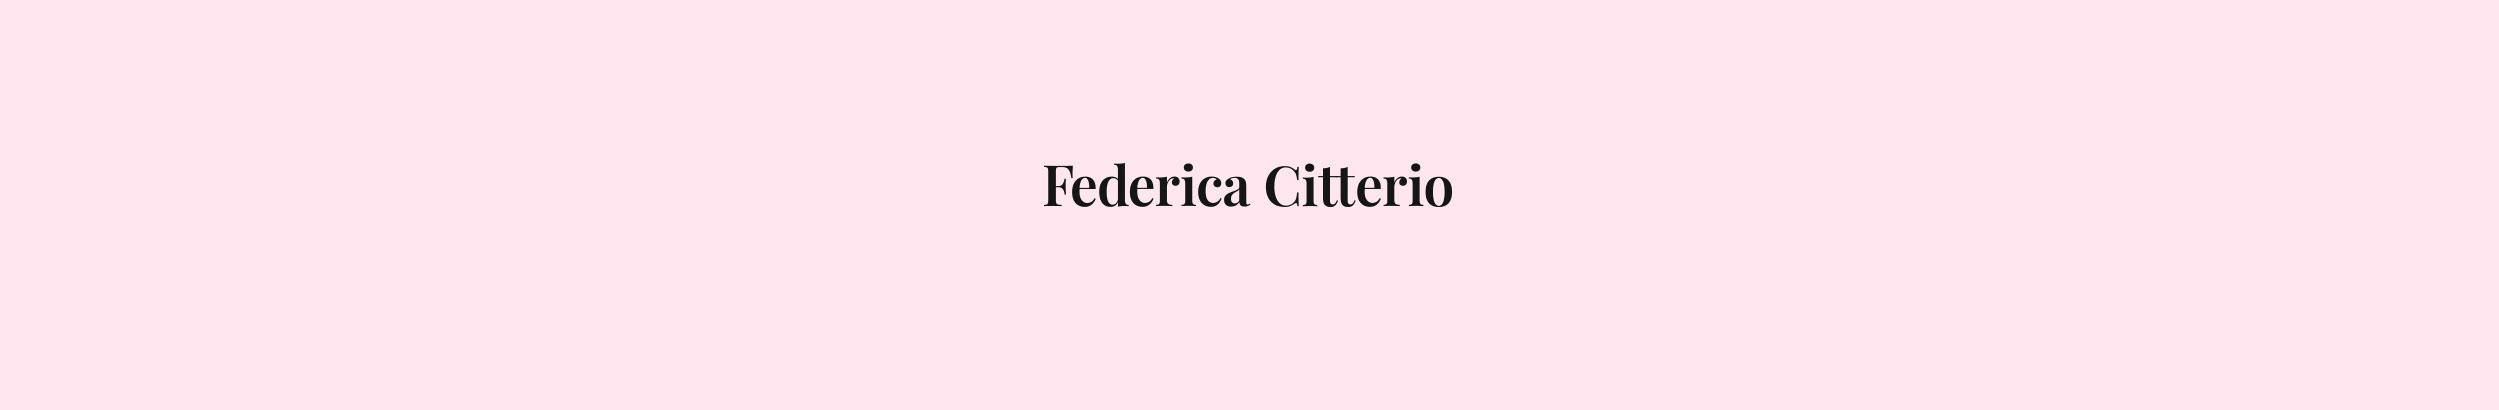 Federica Citterio's profile banner